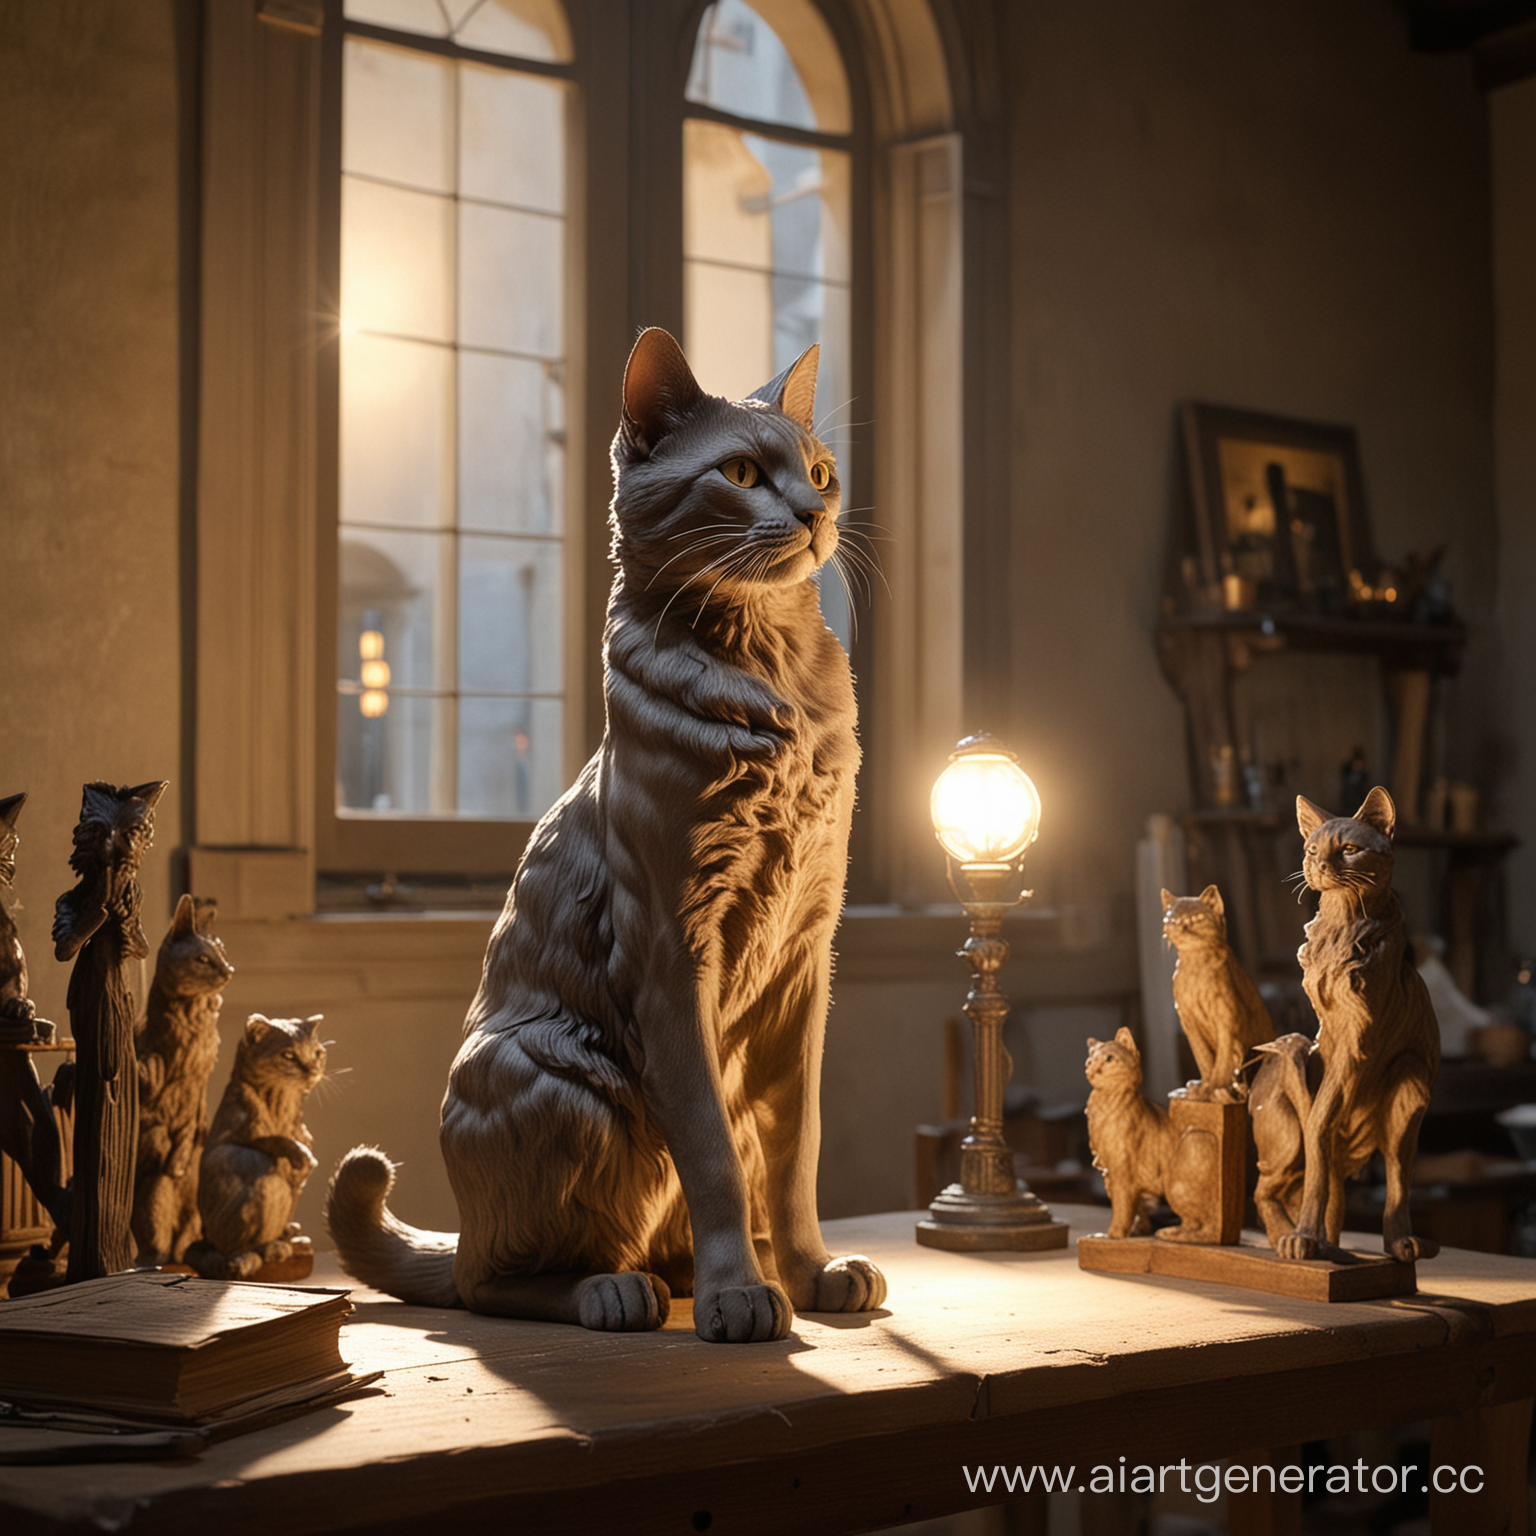 изобрази кота, который живет во времена ренессанса во Флоренции. Он стоит в своей мастерской, куда через окна попадают лучи света, и создает новую великолепную скульптуру.